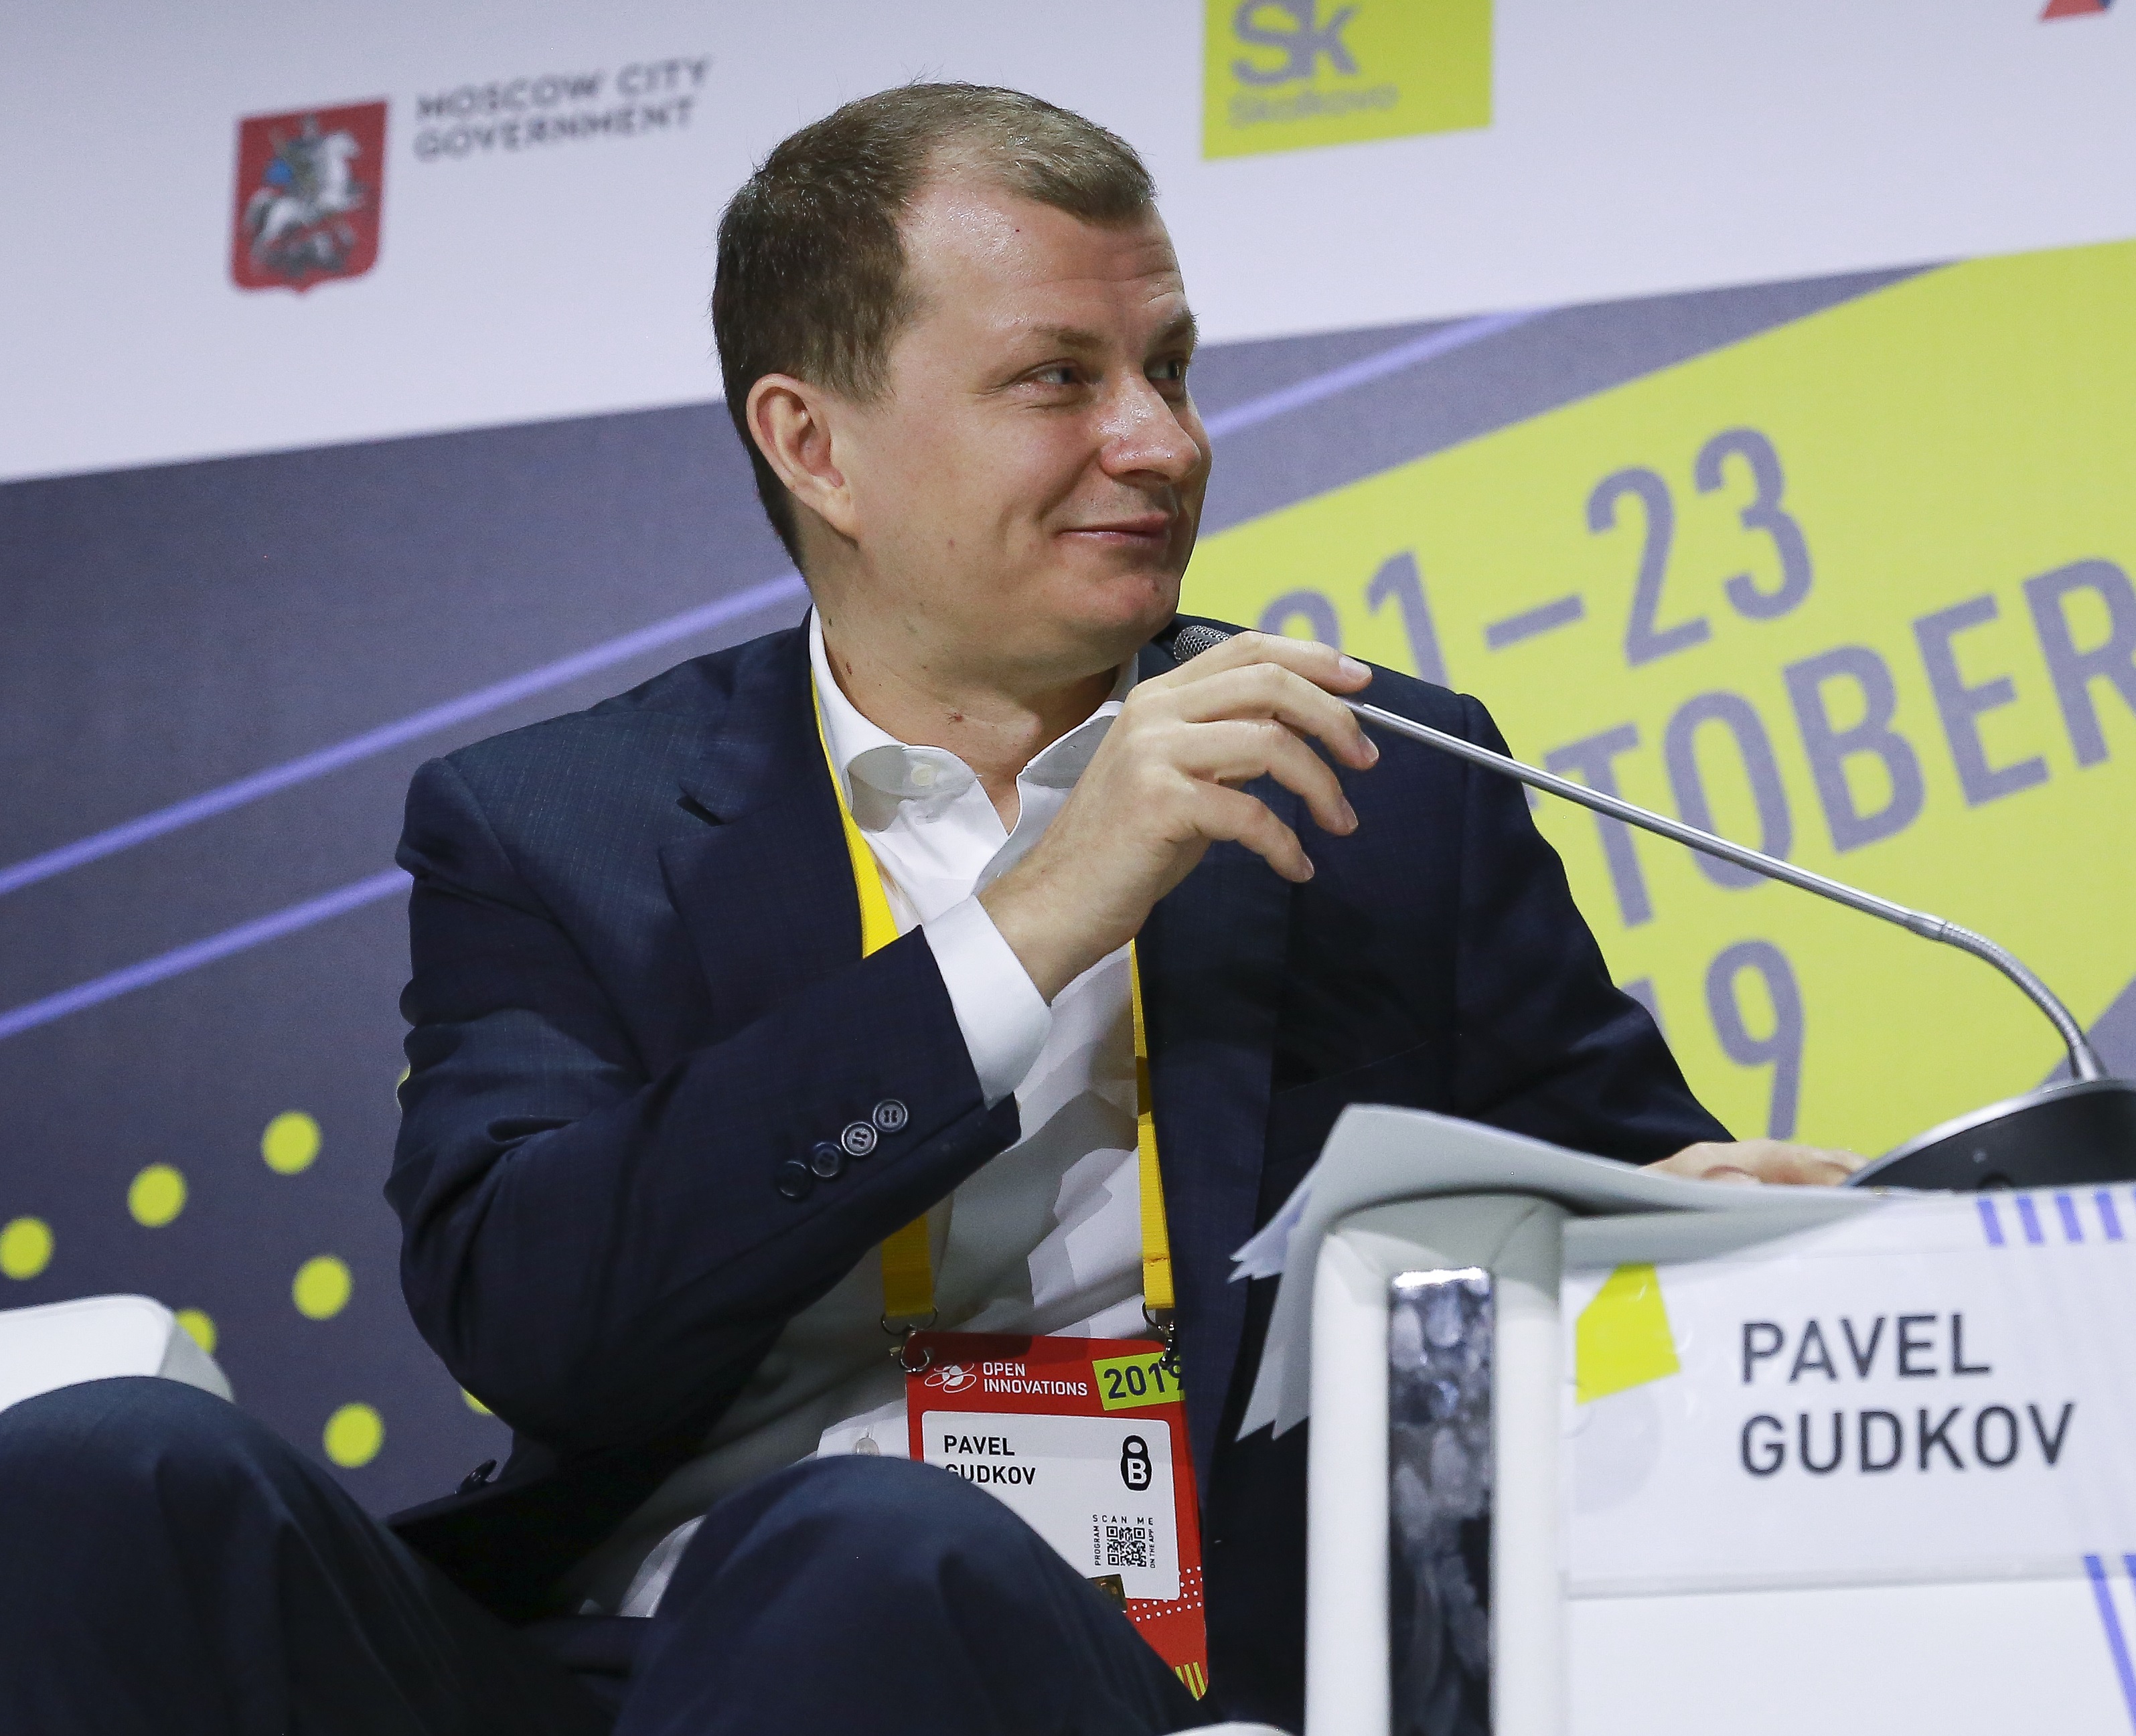 Павел Гудков: Правительство и госкорпорации предлагают россиянам свои сценарии будущего